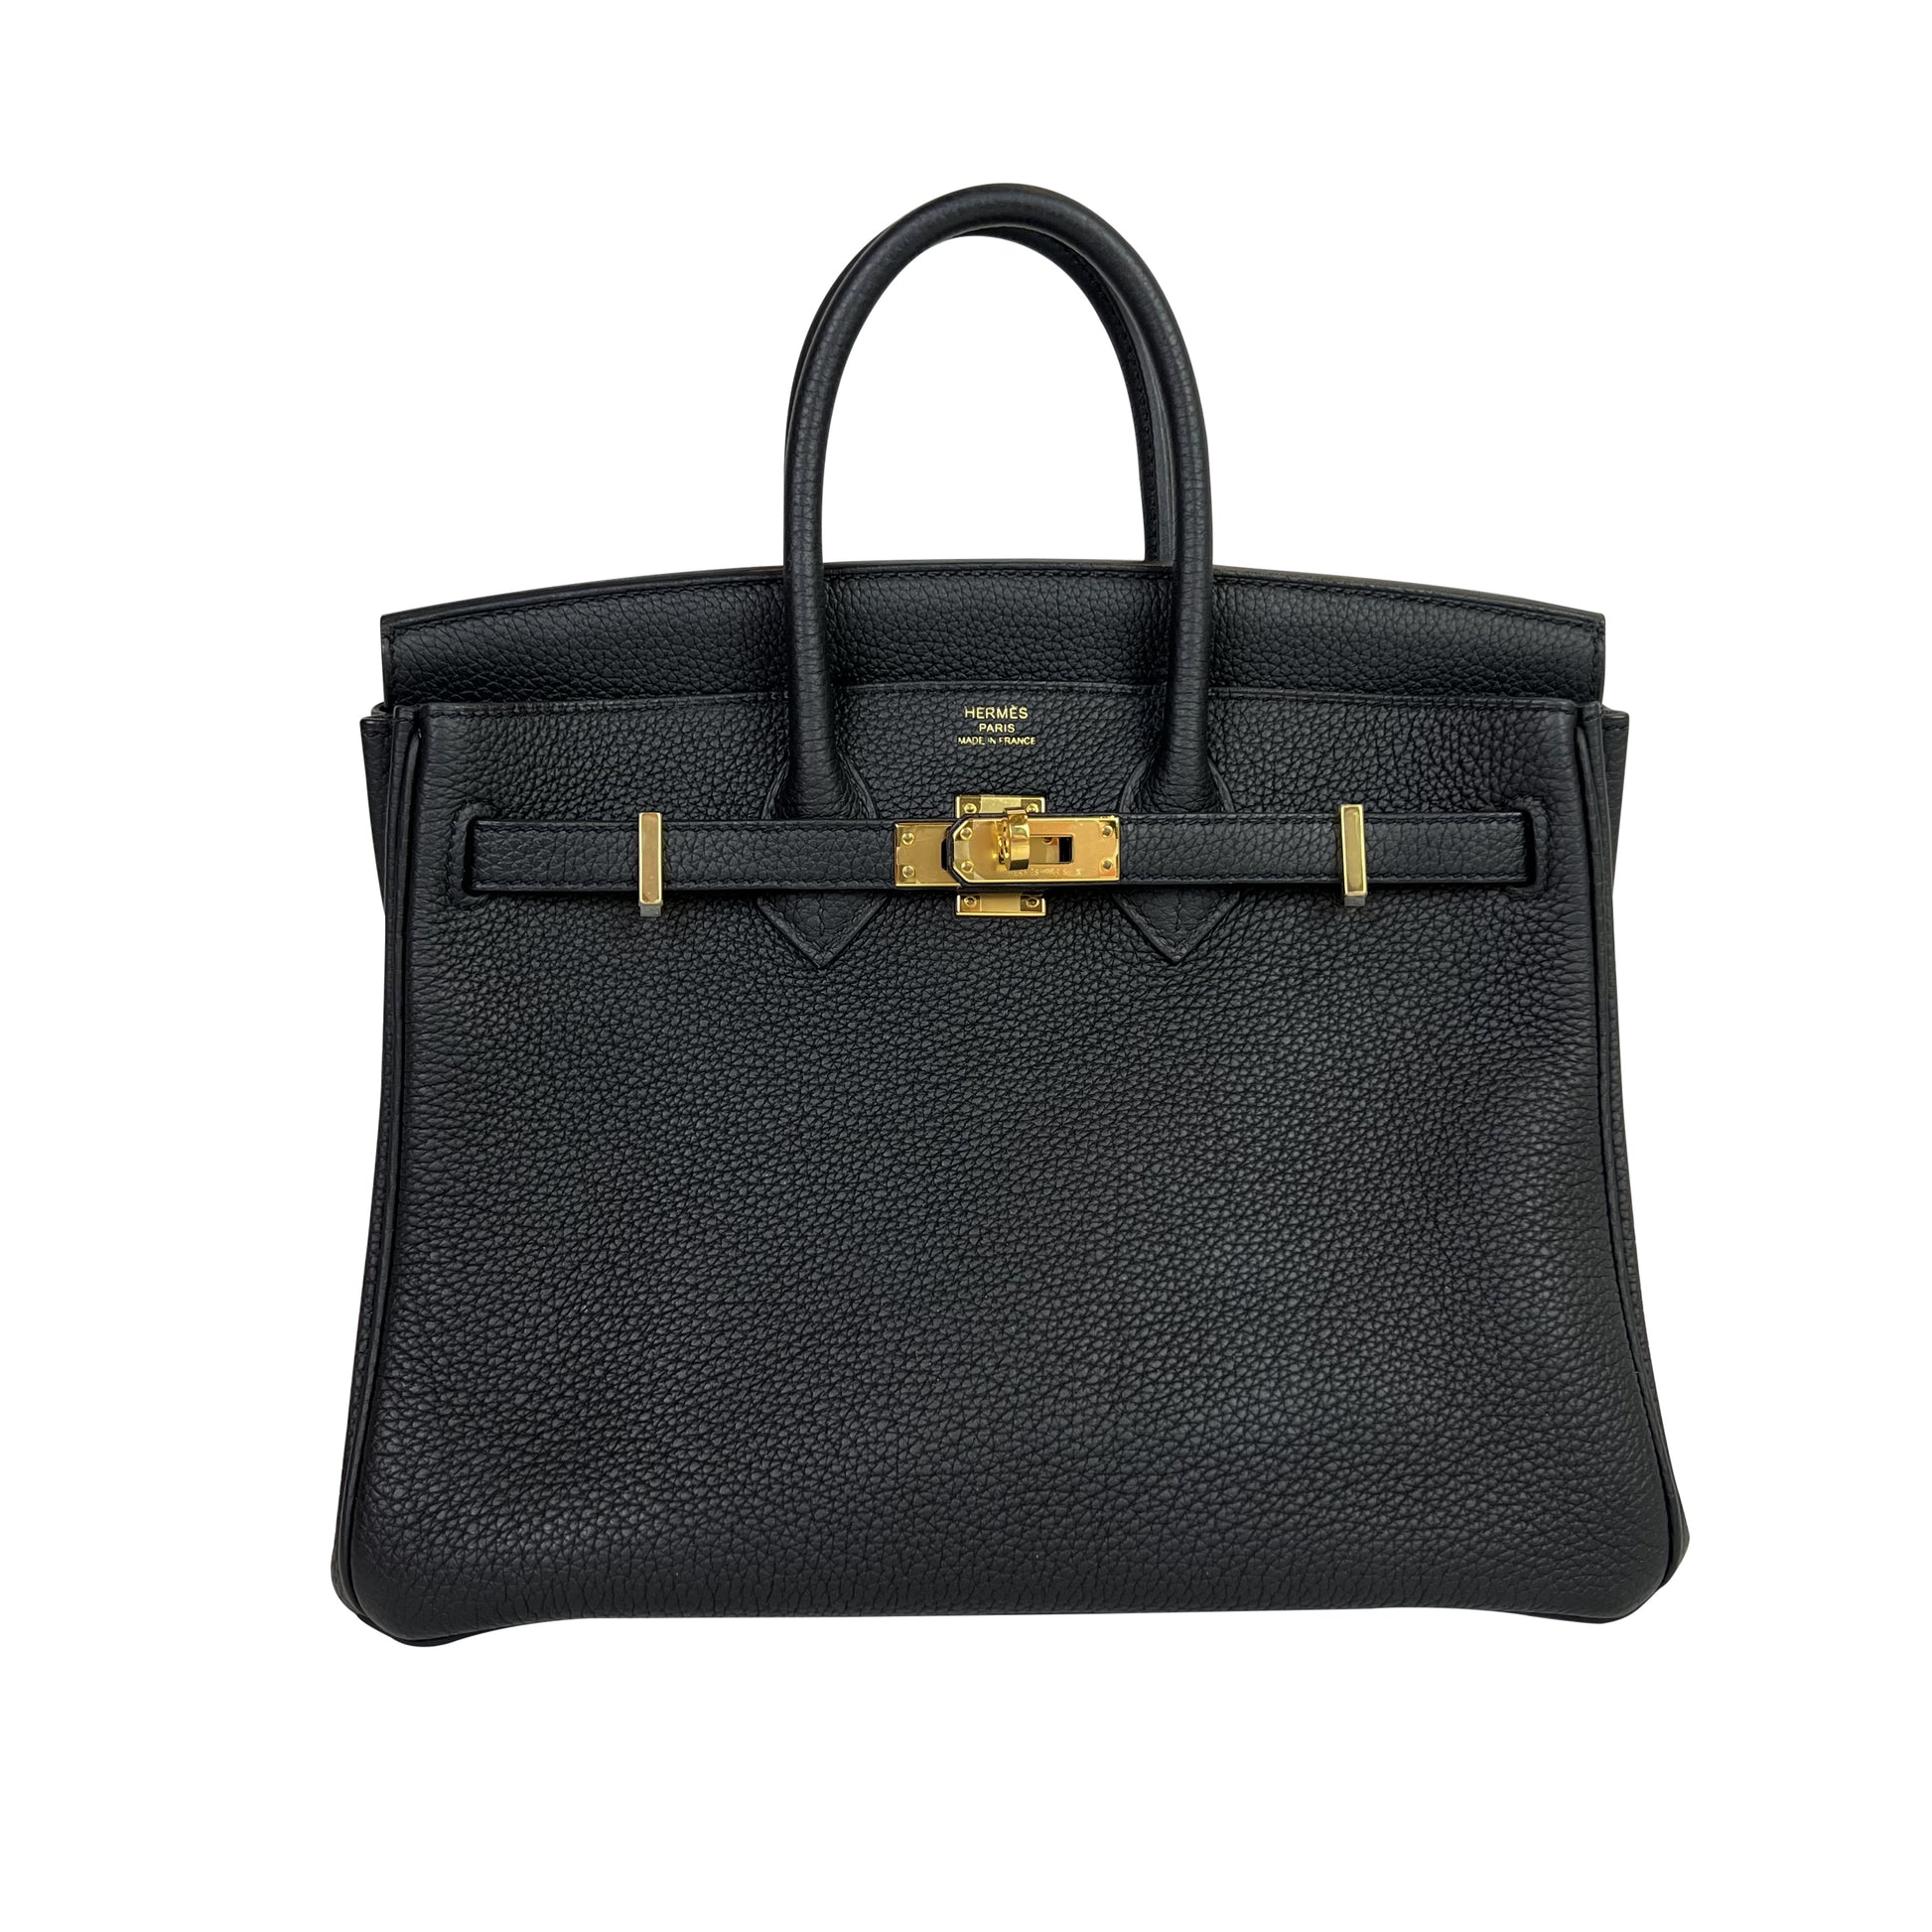 Hermès Birkin 25 Special Order HSS Black / Craie Togo BGHW from 100%  authentic materials!